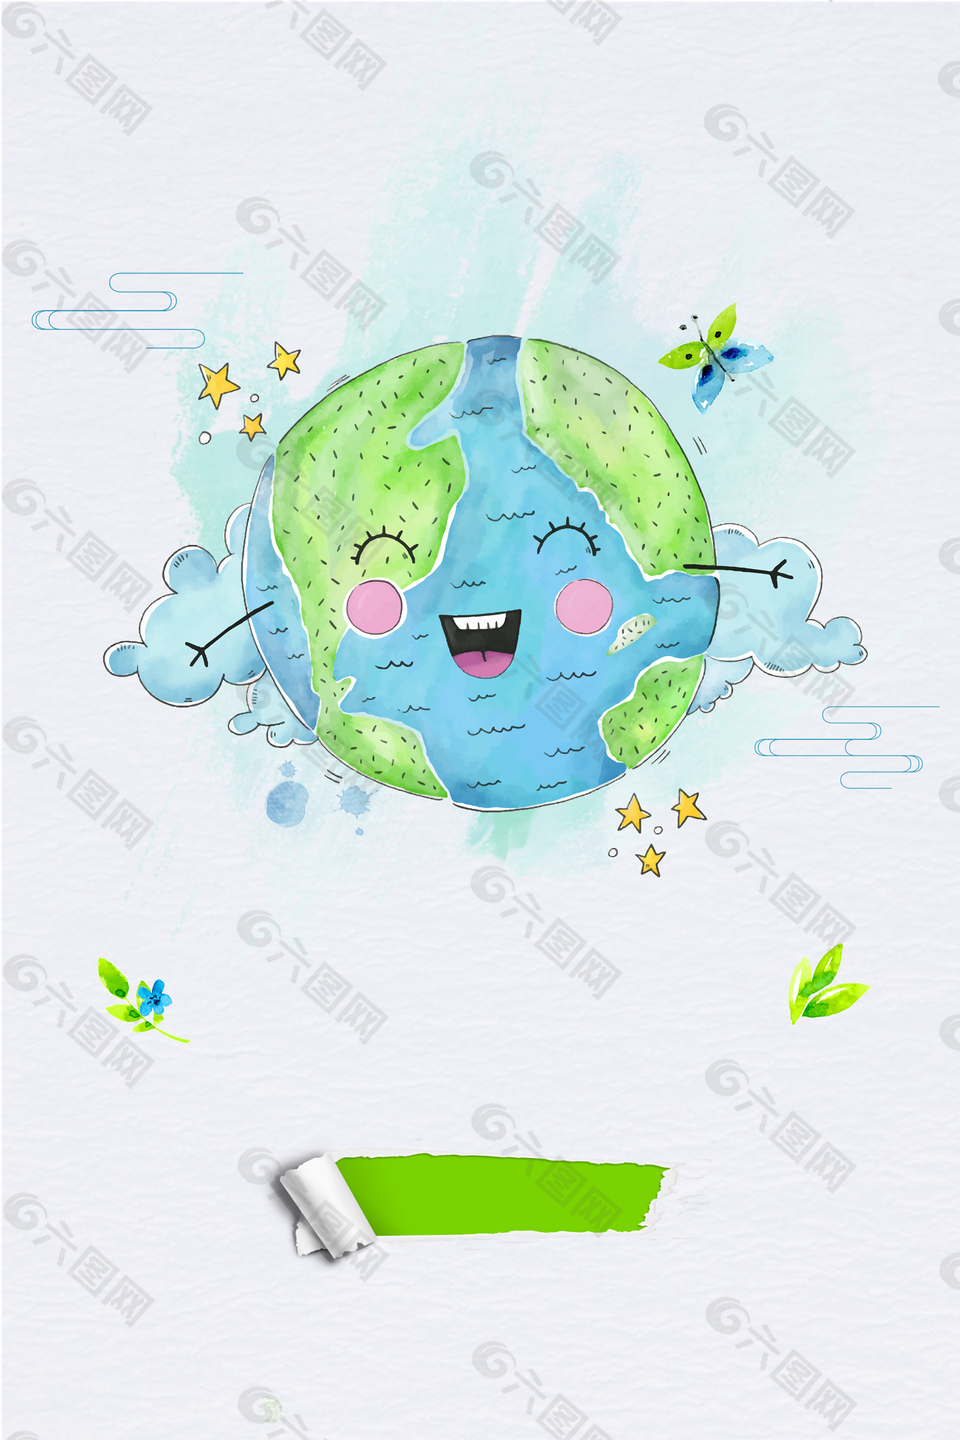 地球日环保公益宣传海报背景